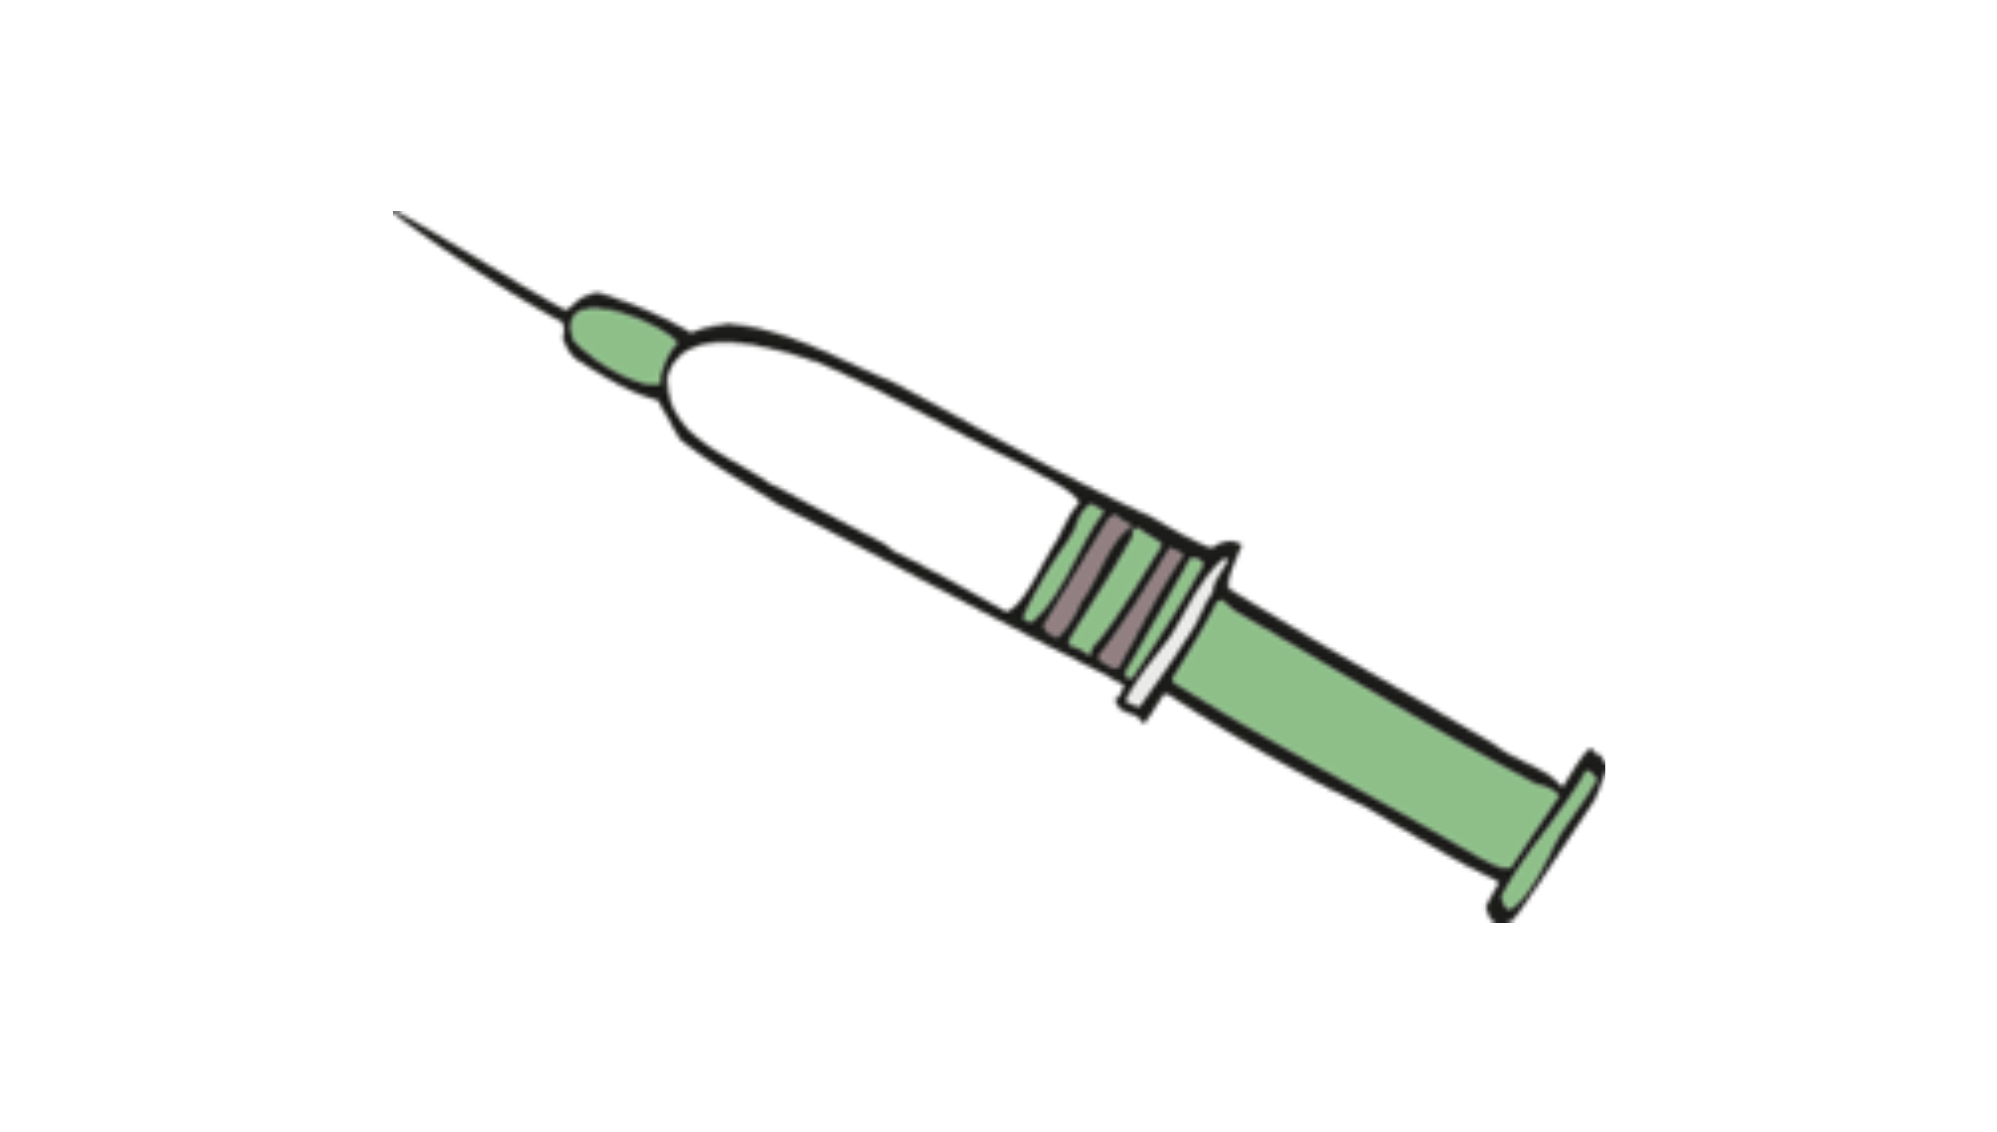 Grafik: Spritze für eine Impfung